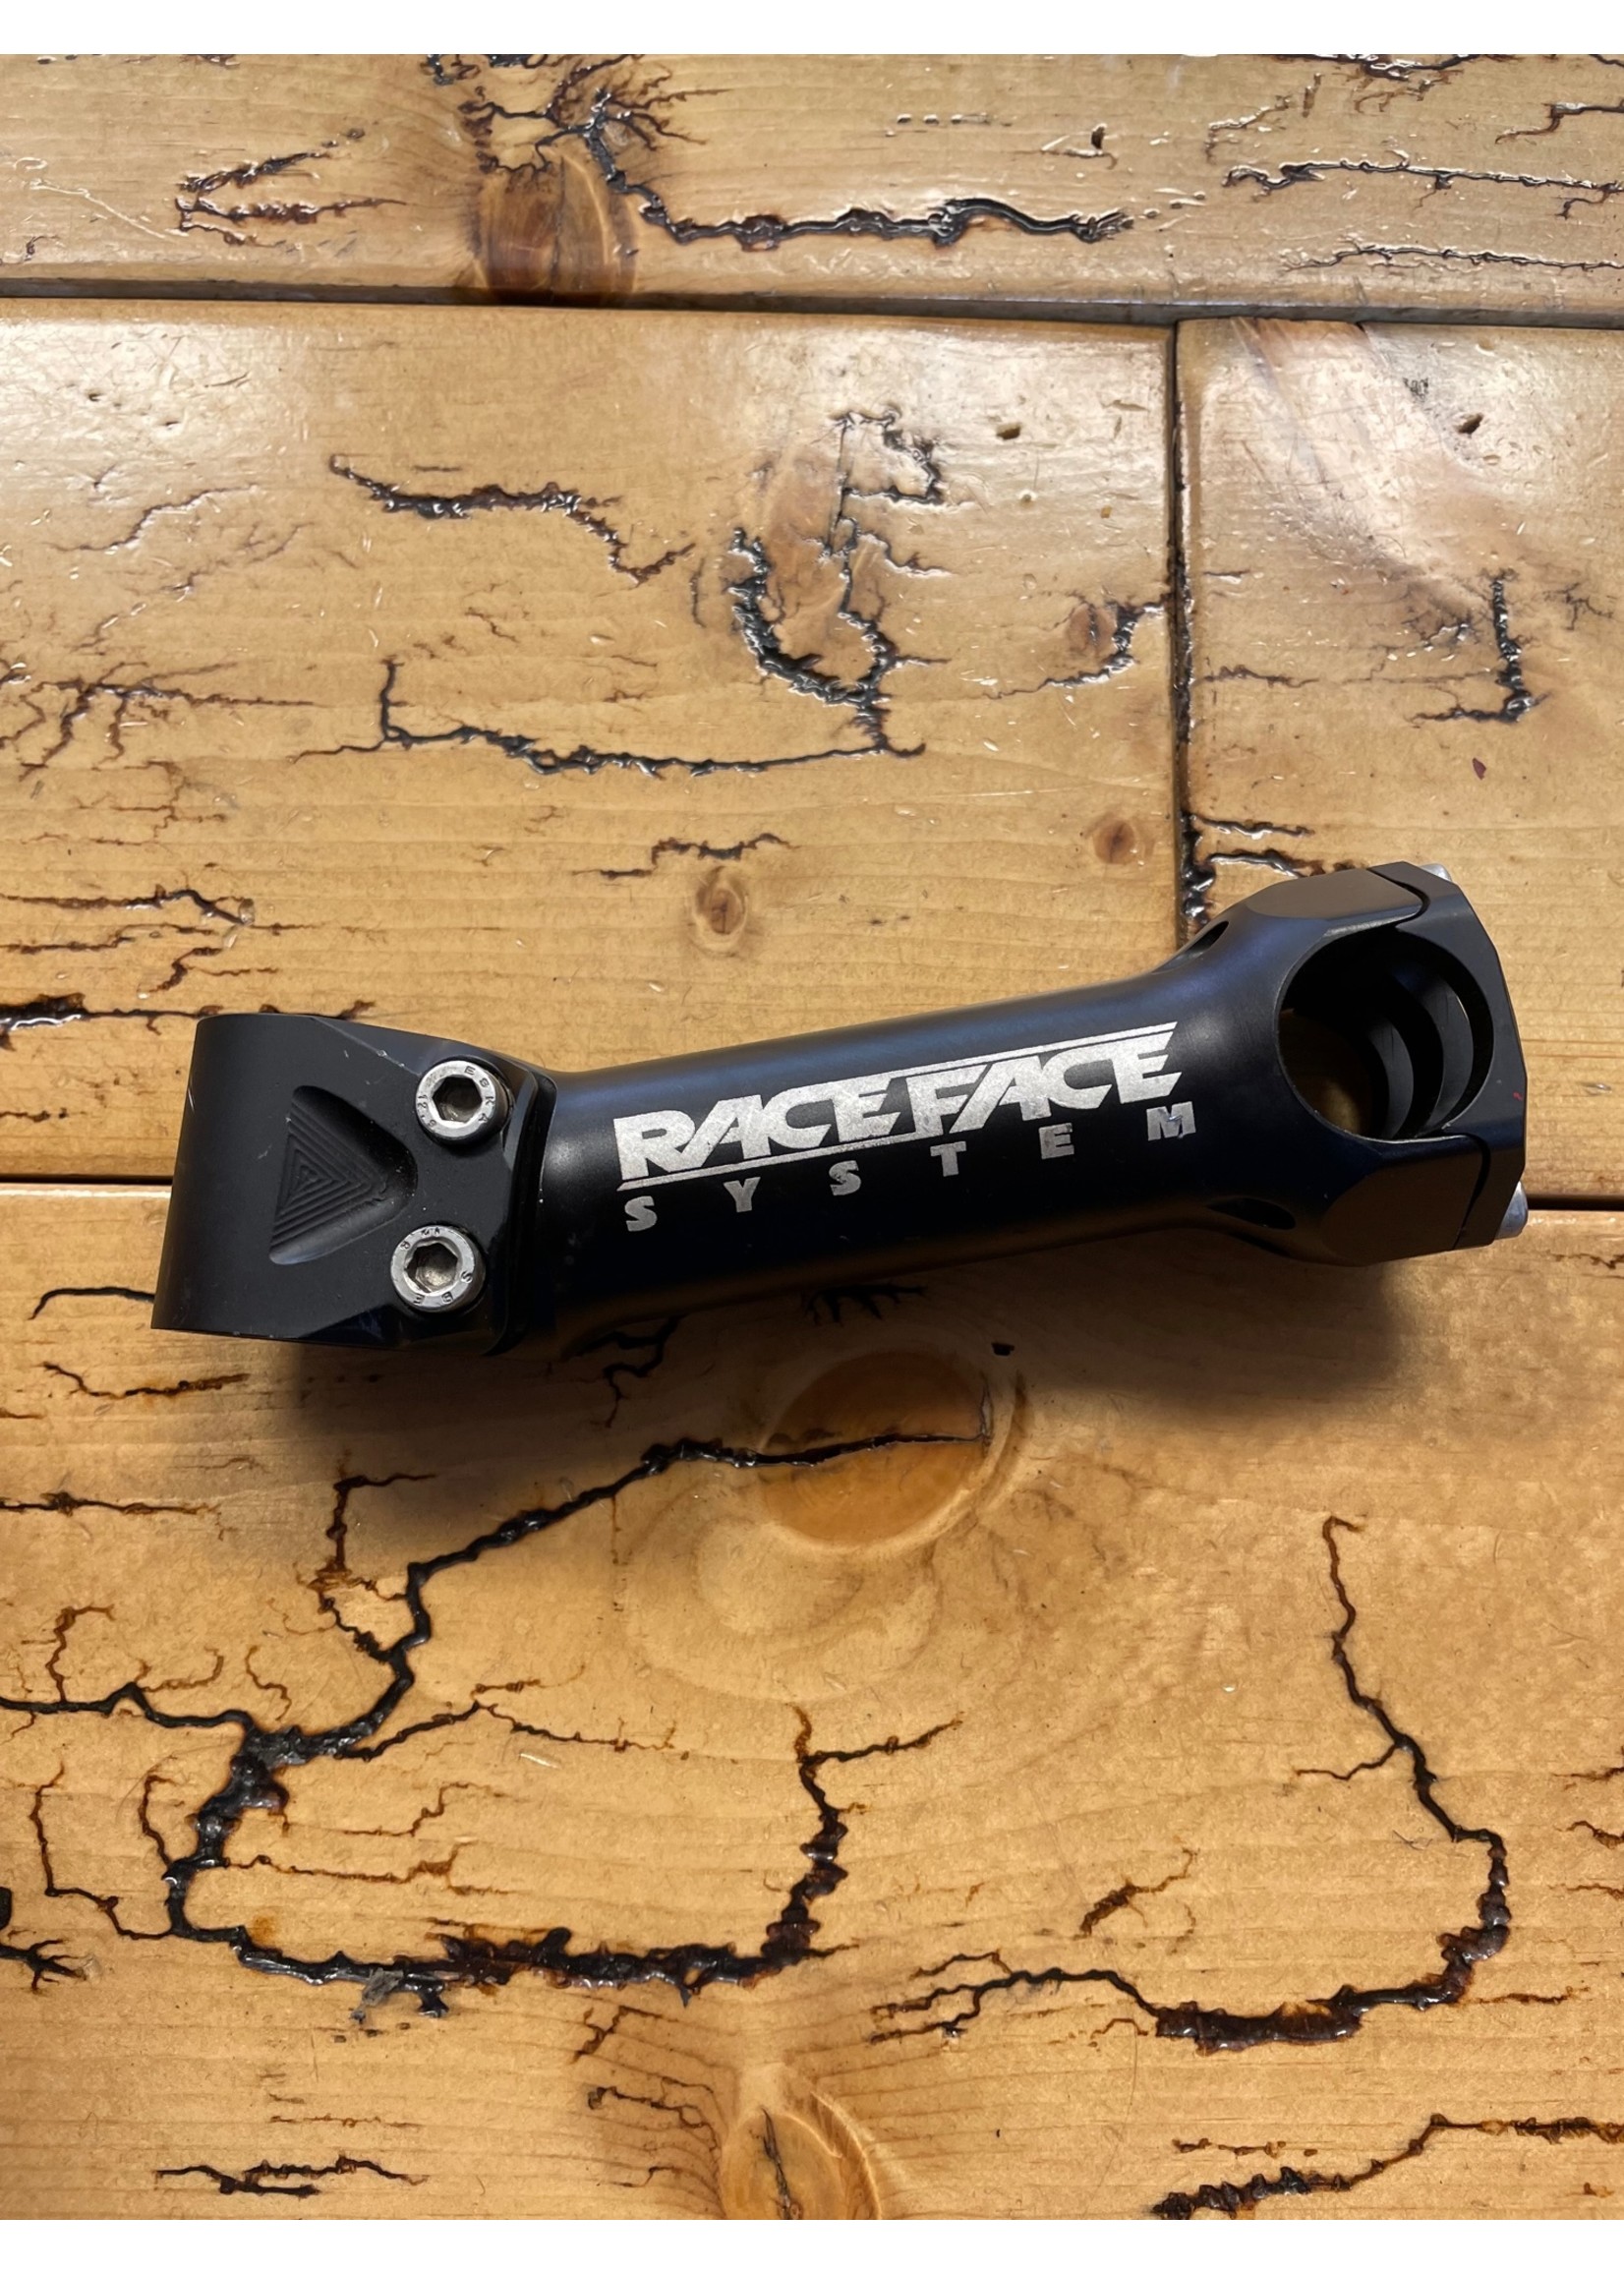 Raceface Raceface System 130mm 1 1/8 25.4mm Stem